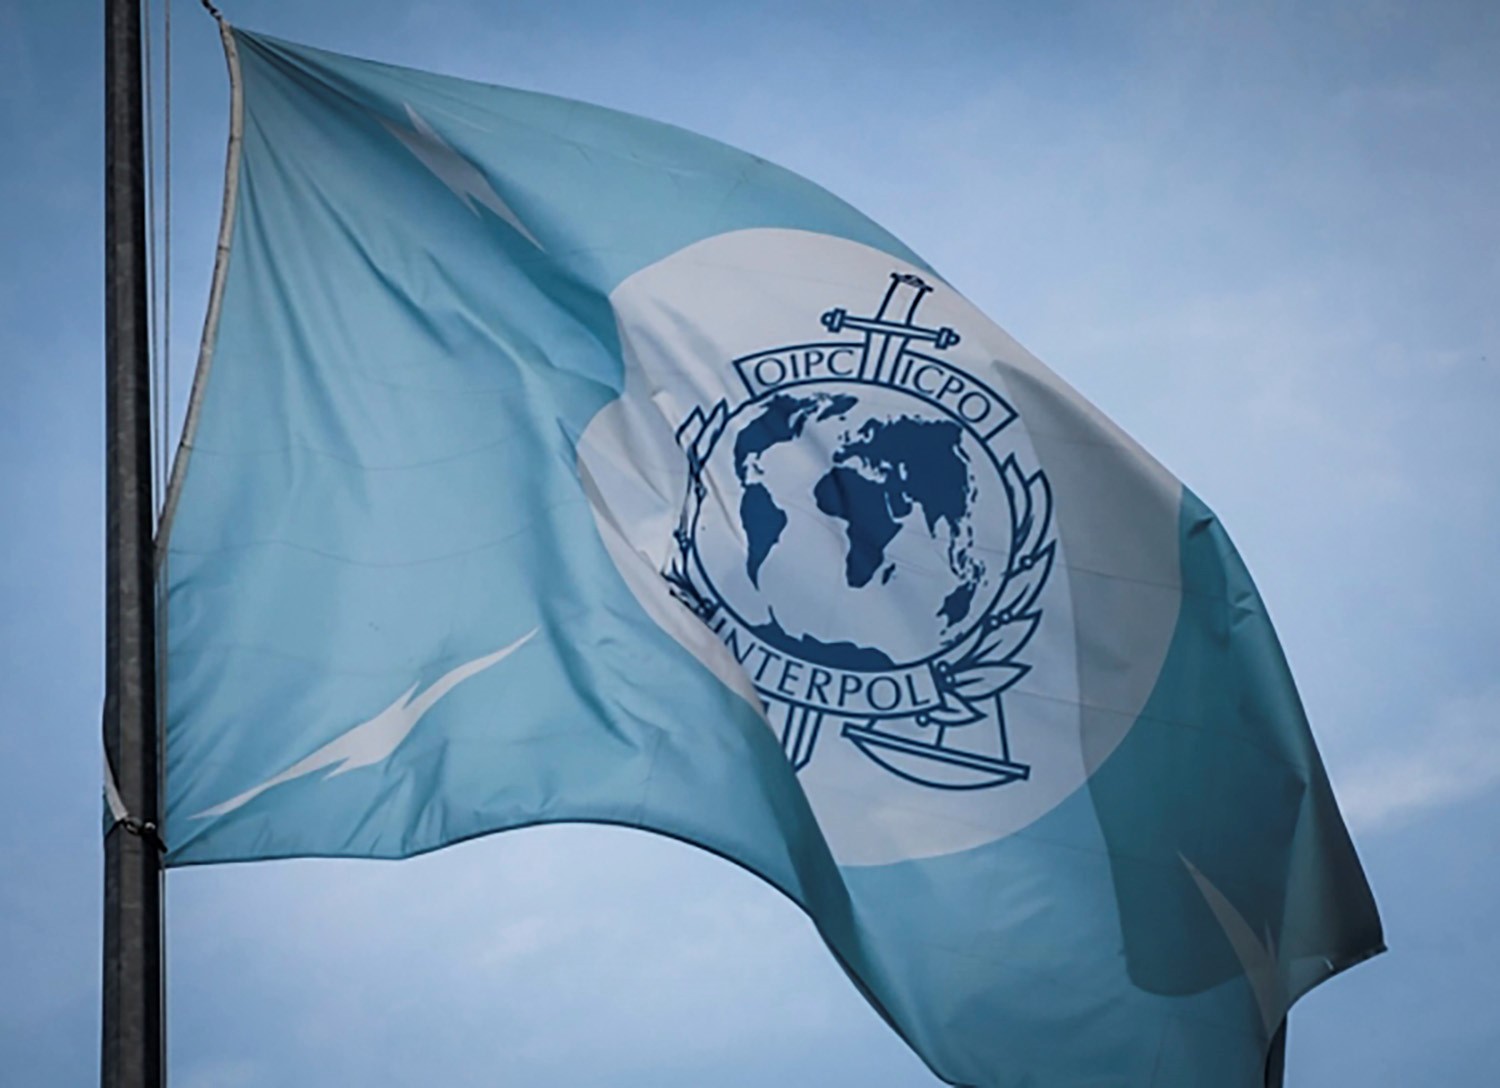 Interpolin sinivalkoinen lippu salossa. Siinä on vaaleansininen tausta, jonka keskellä on tunnus ja neljä salamaa, jotka symboloivat televiestintää ja nopeutta poliisitoiminnassa.